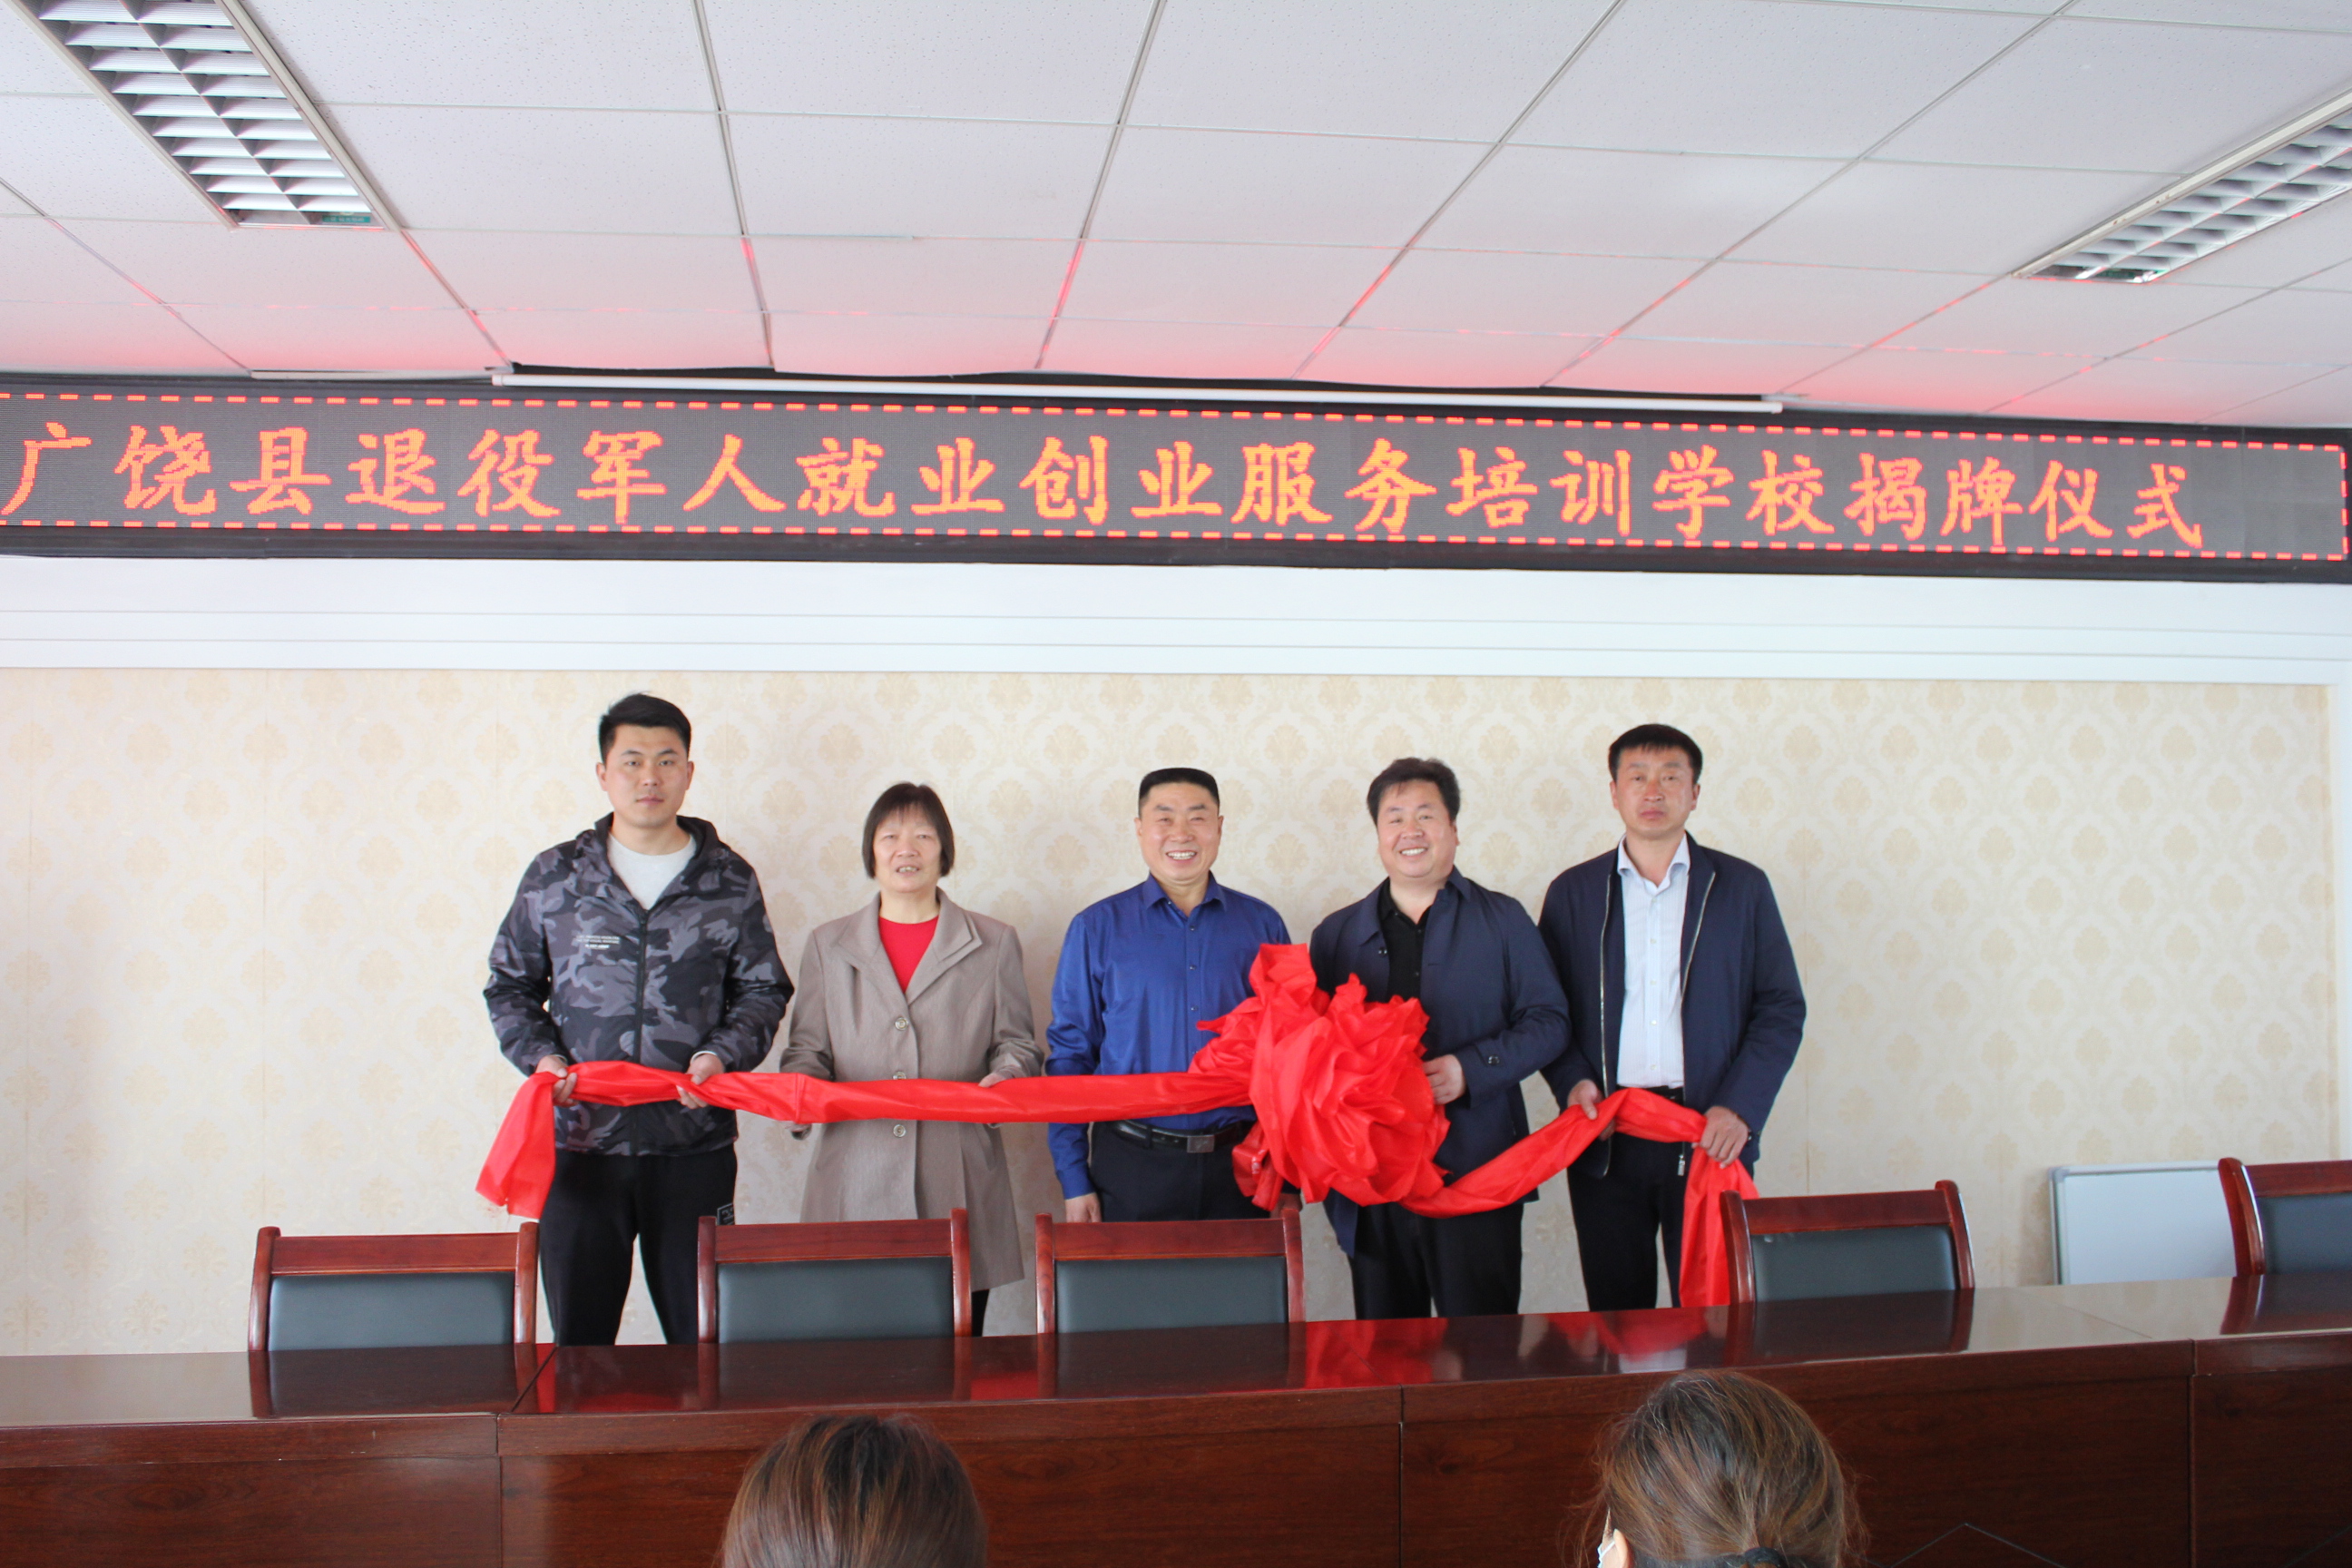  广饶县退役军人就业创业服务培训学校揭牌仪式